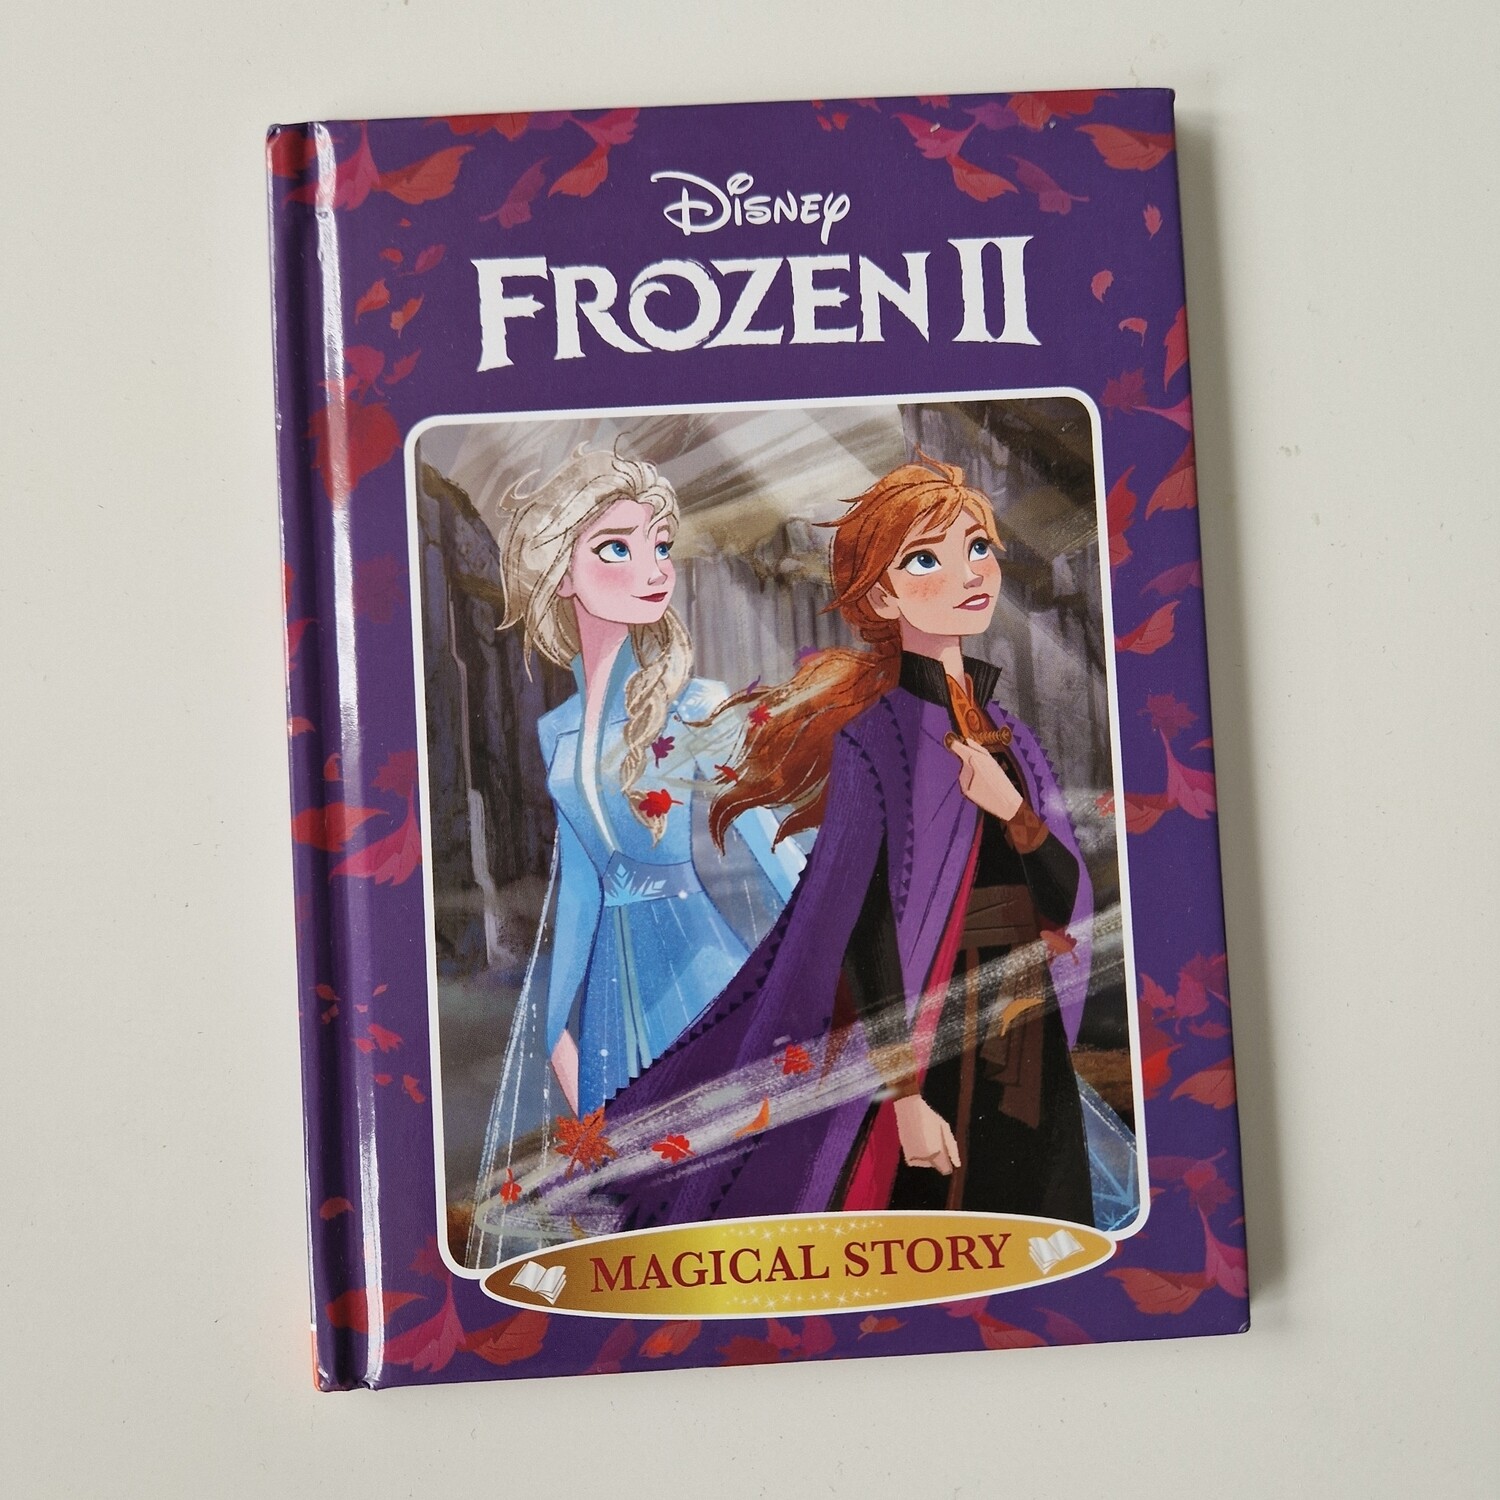 Frozen 2 Notebook - Elsa and Anna